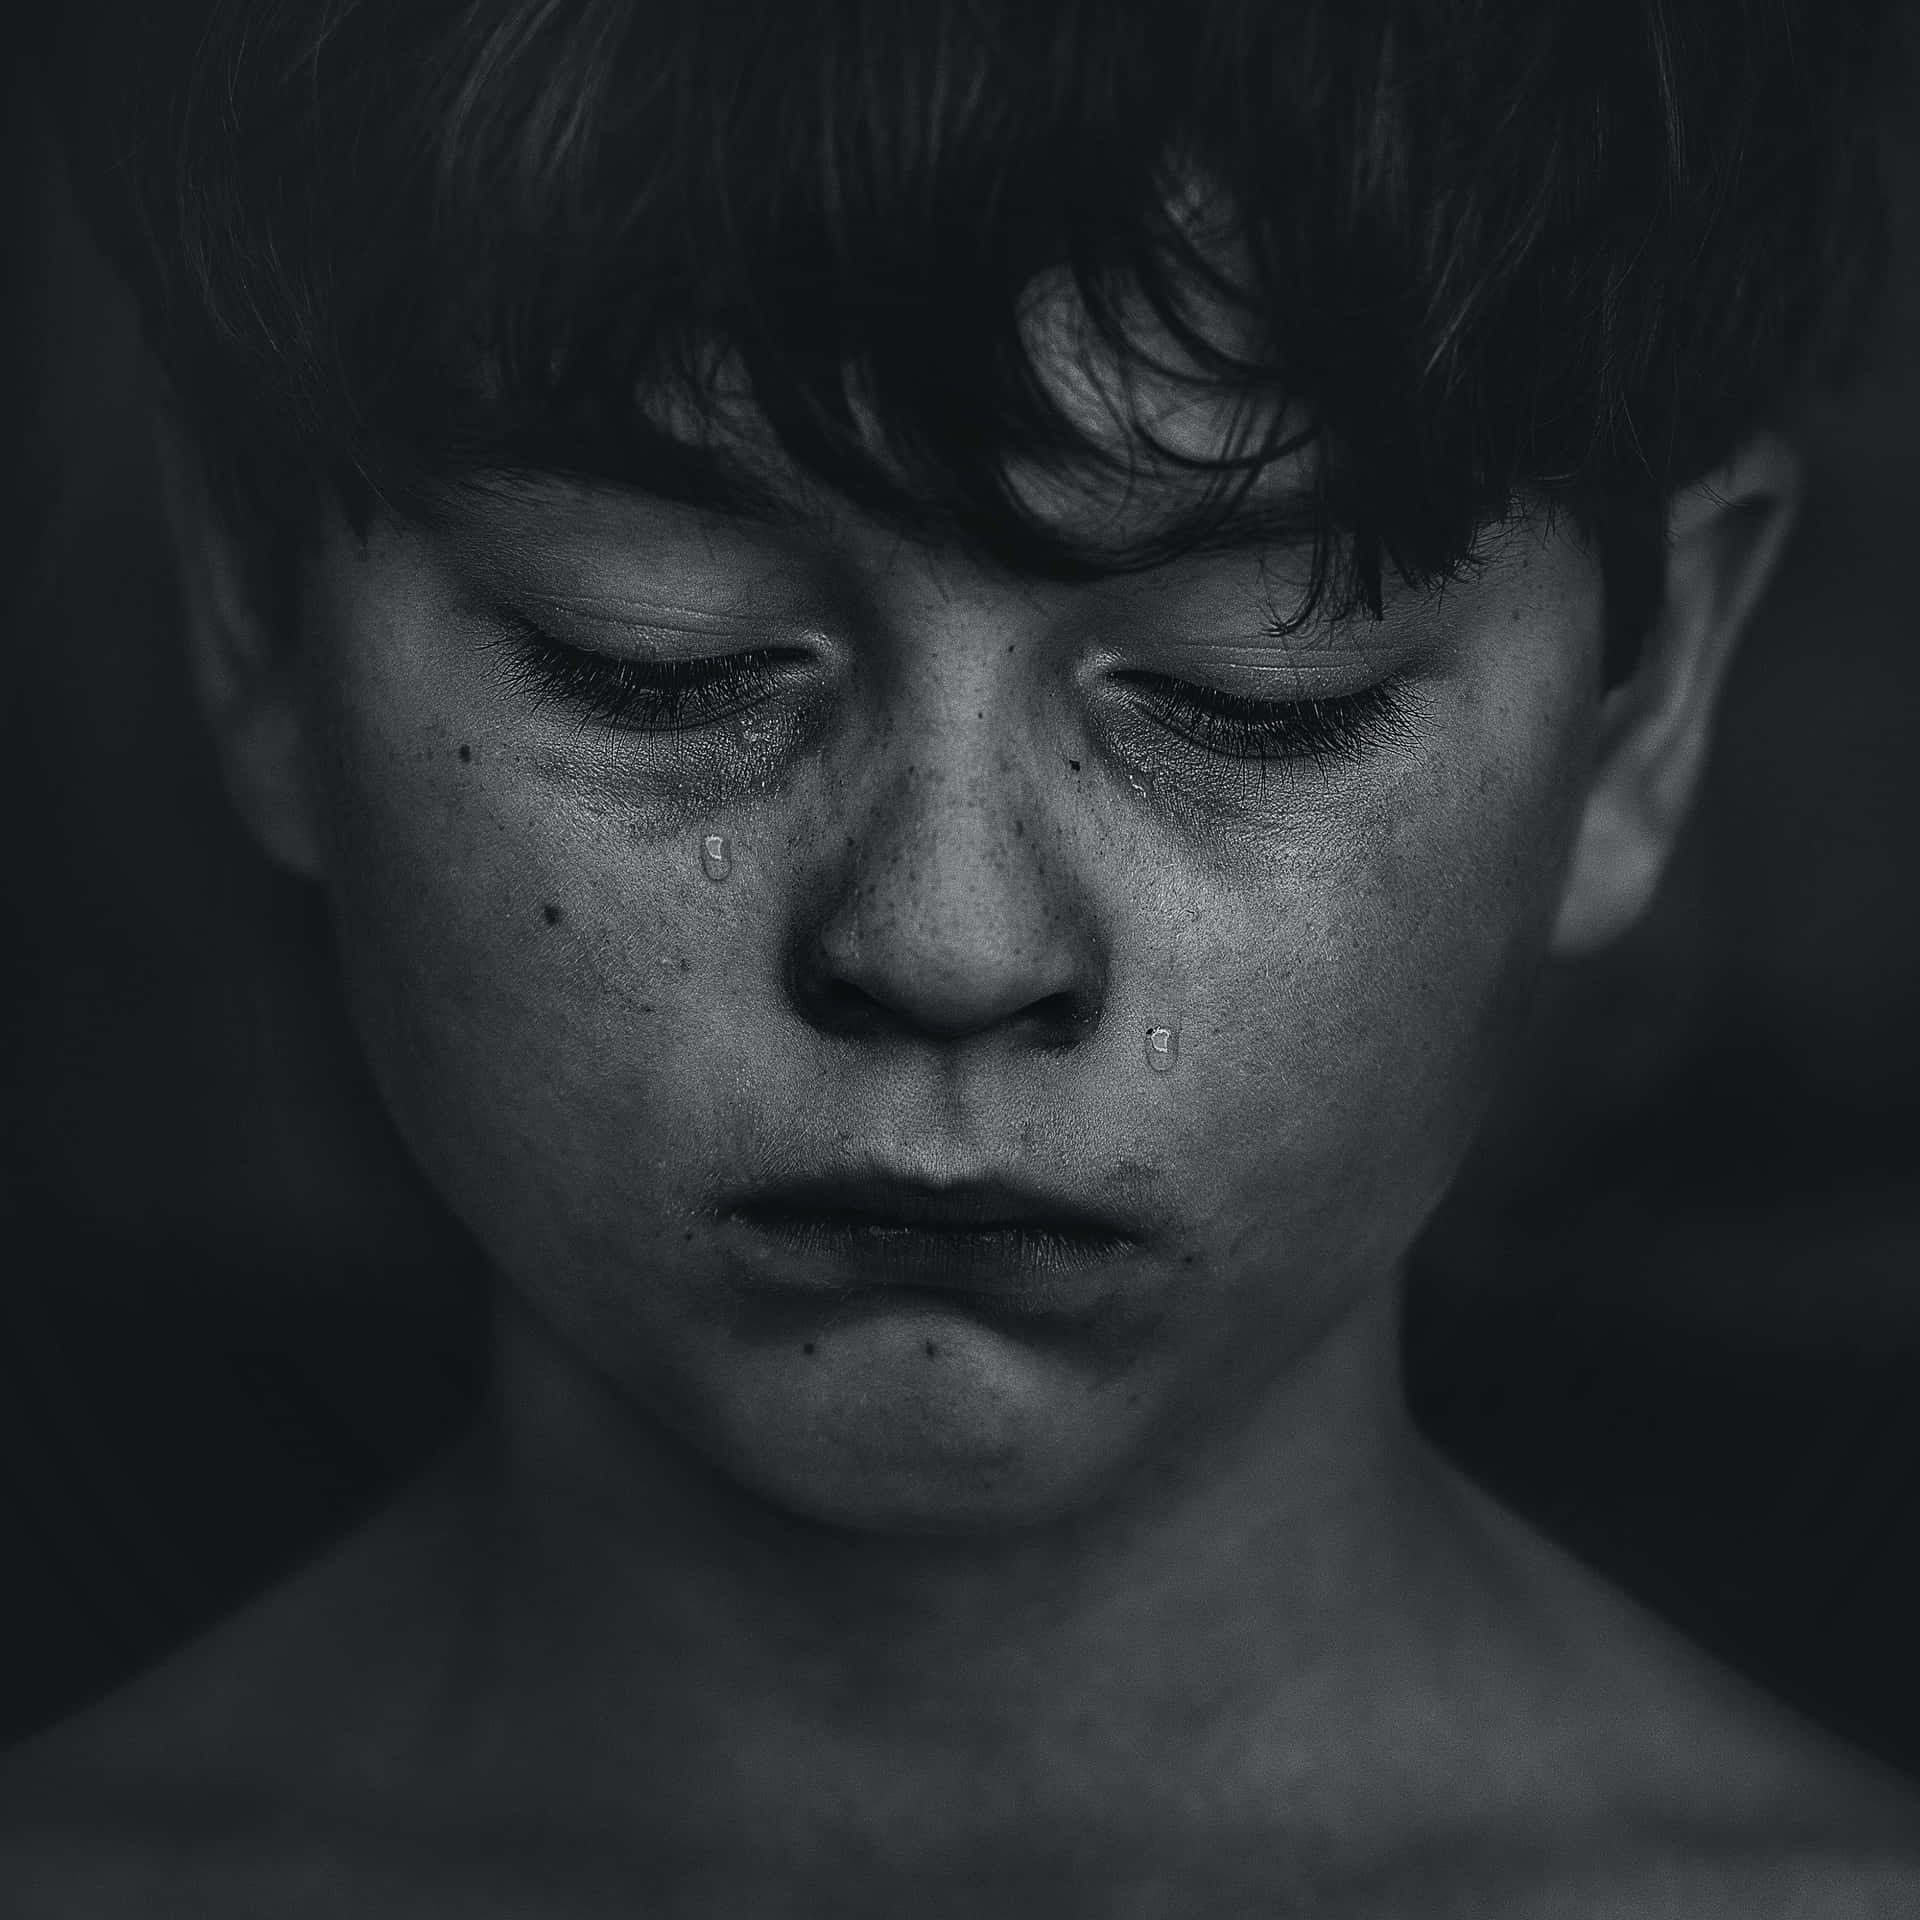 Bildpå En Ledsen Pojke Med Tårar Som Faller